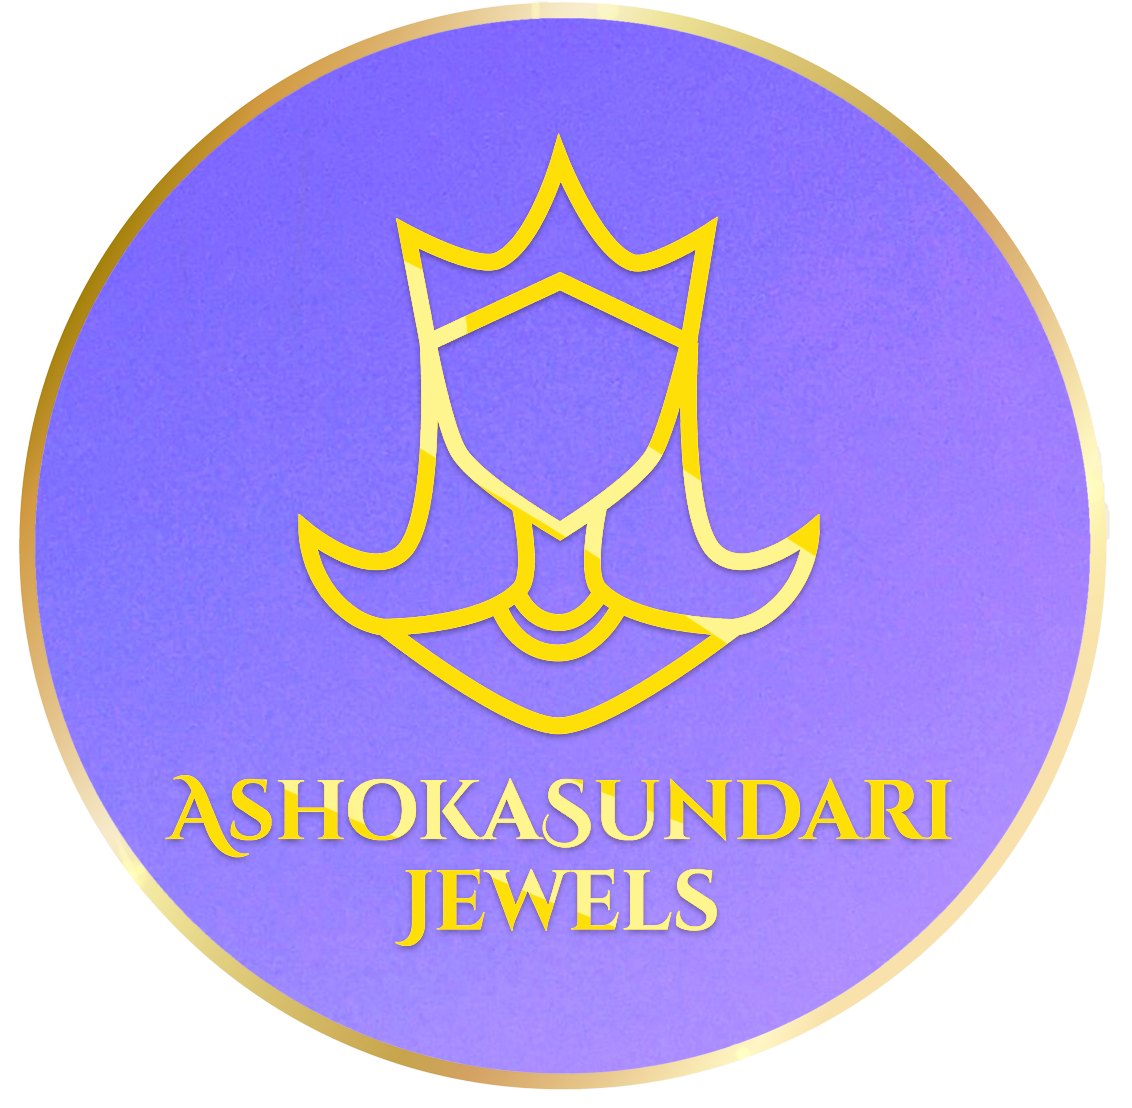 AshokaSundari Jewels